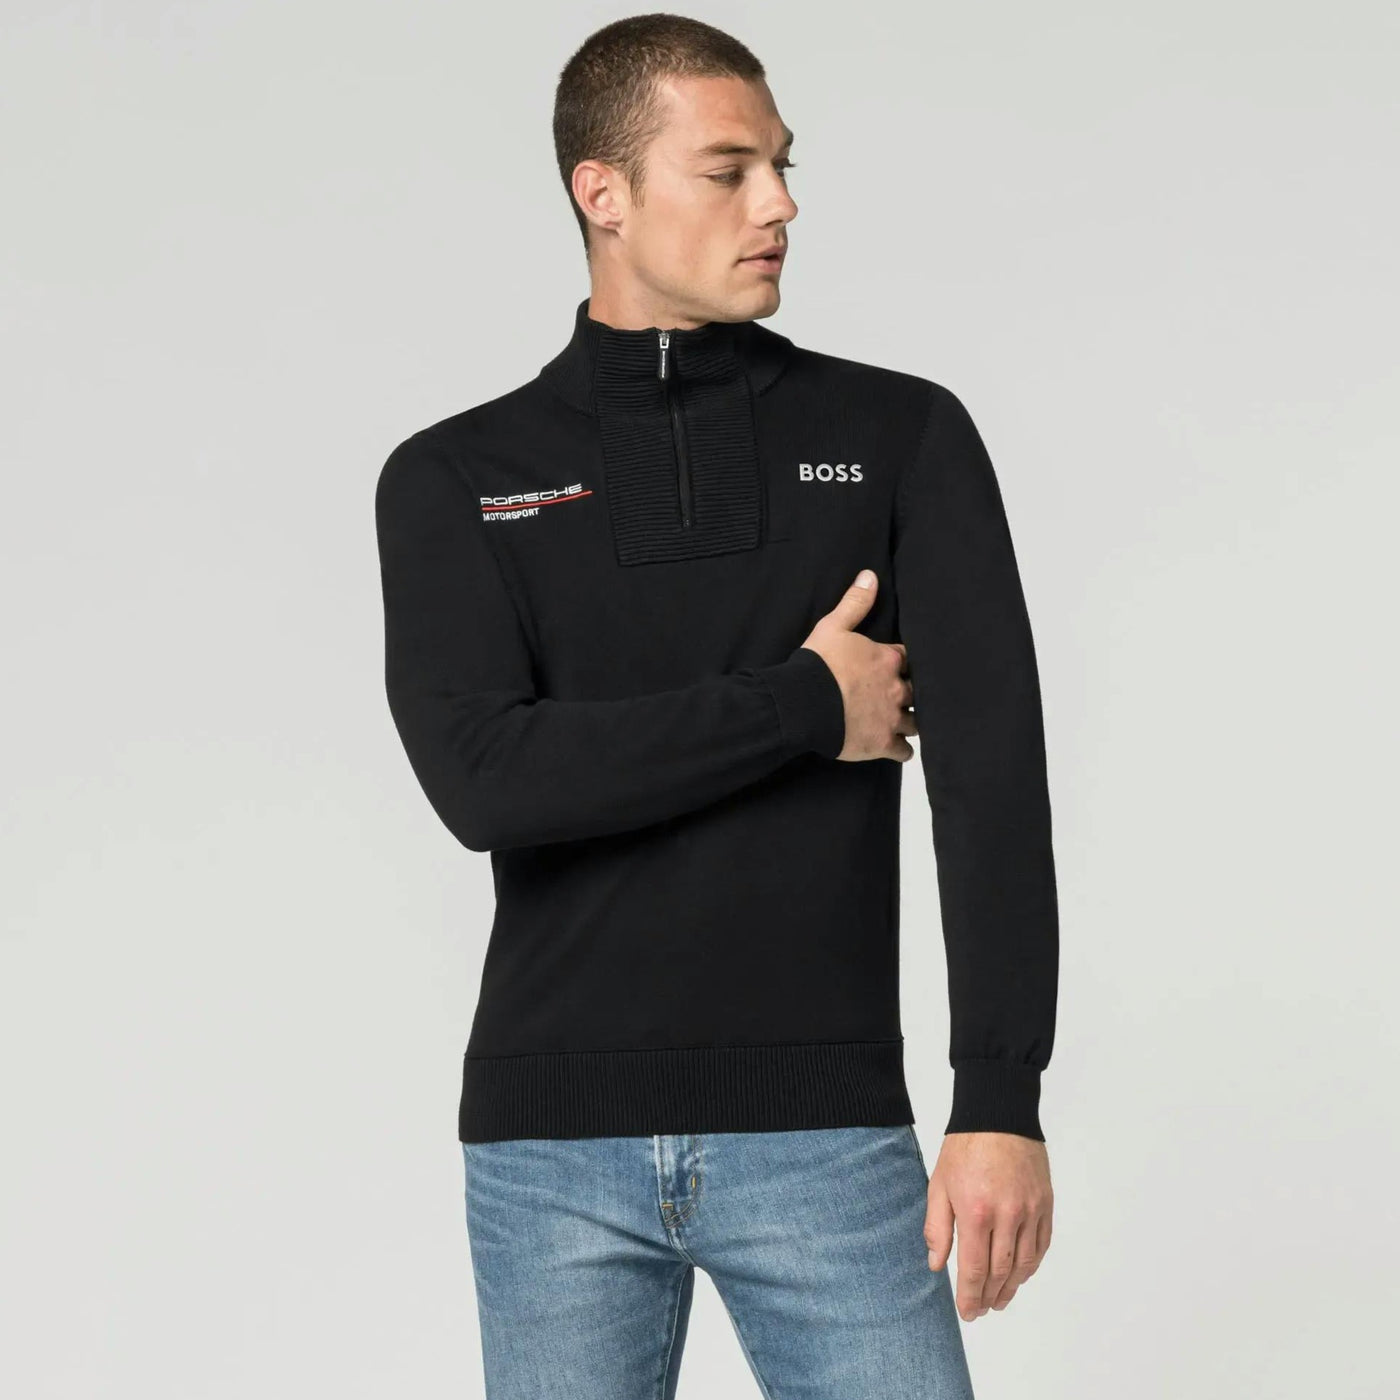 Porsche Men's Knitted Sweater - Motorsport, Boss